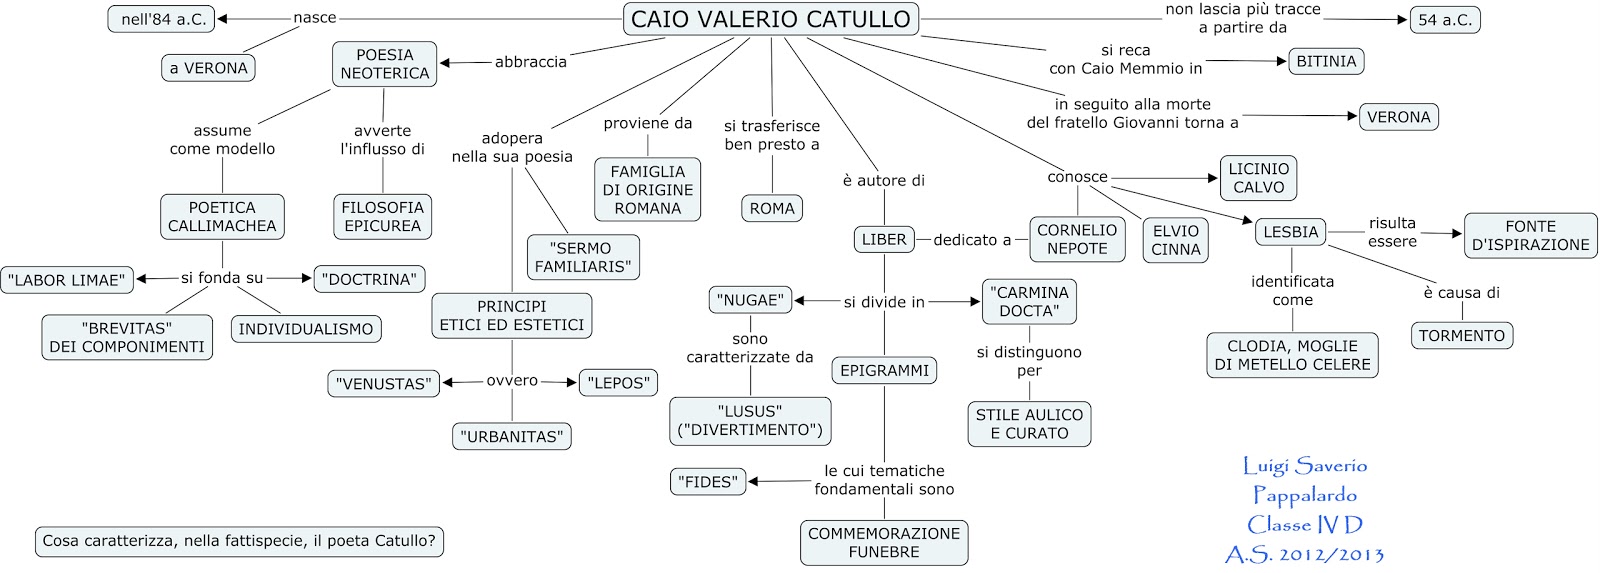 Tutti a bordo dislessia Letteratura Latina Catullo mappa concettuale jpg (1600x573)